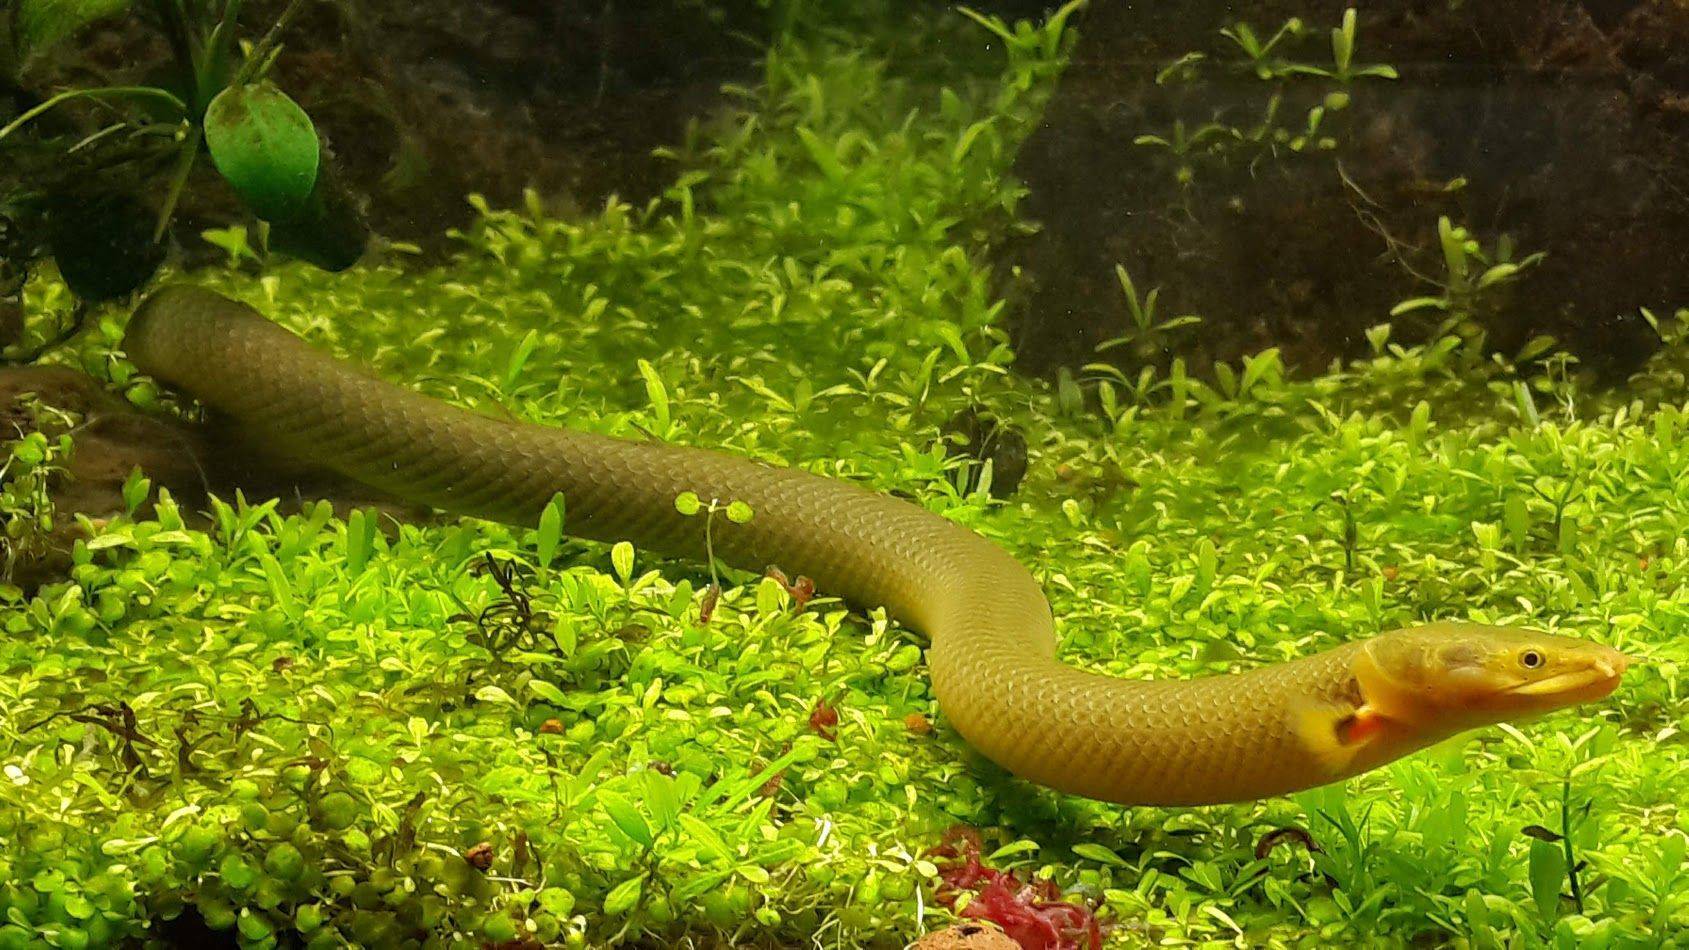 Каламоихт: внешний вид, происхождение и поведение, условия содержания и кормления рыбы-змеи